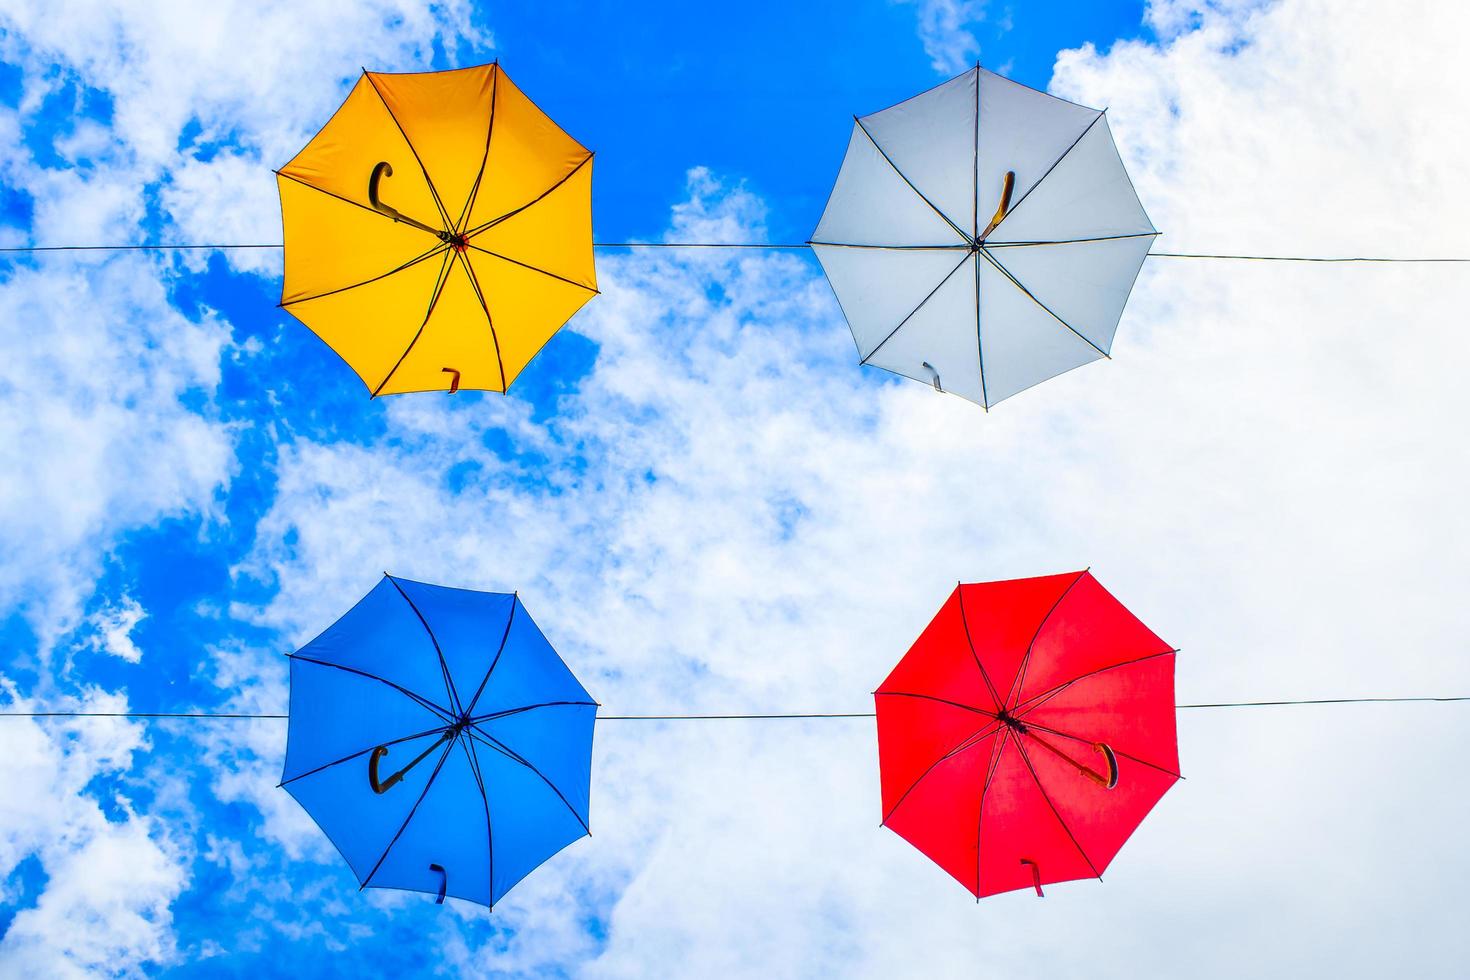 quatro guarda-chuvas de cores variadas pendurados em cabos sob céu nublado foto